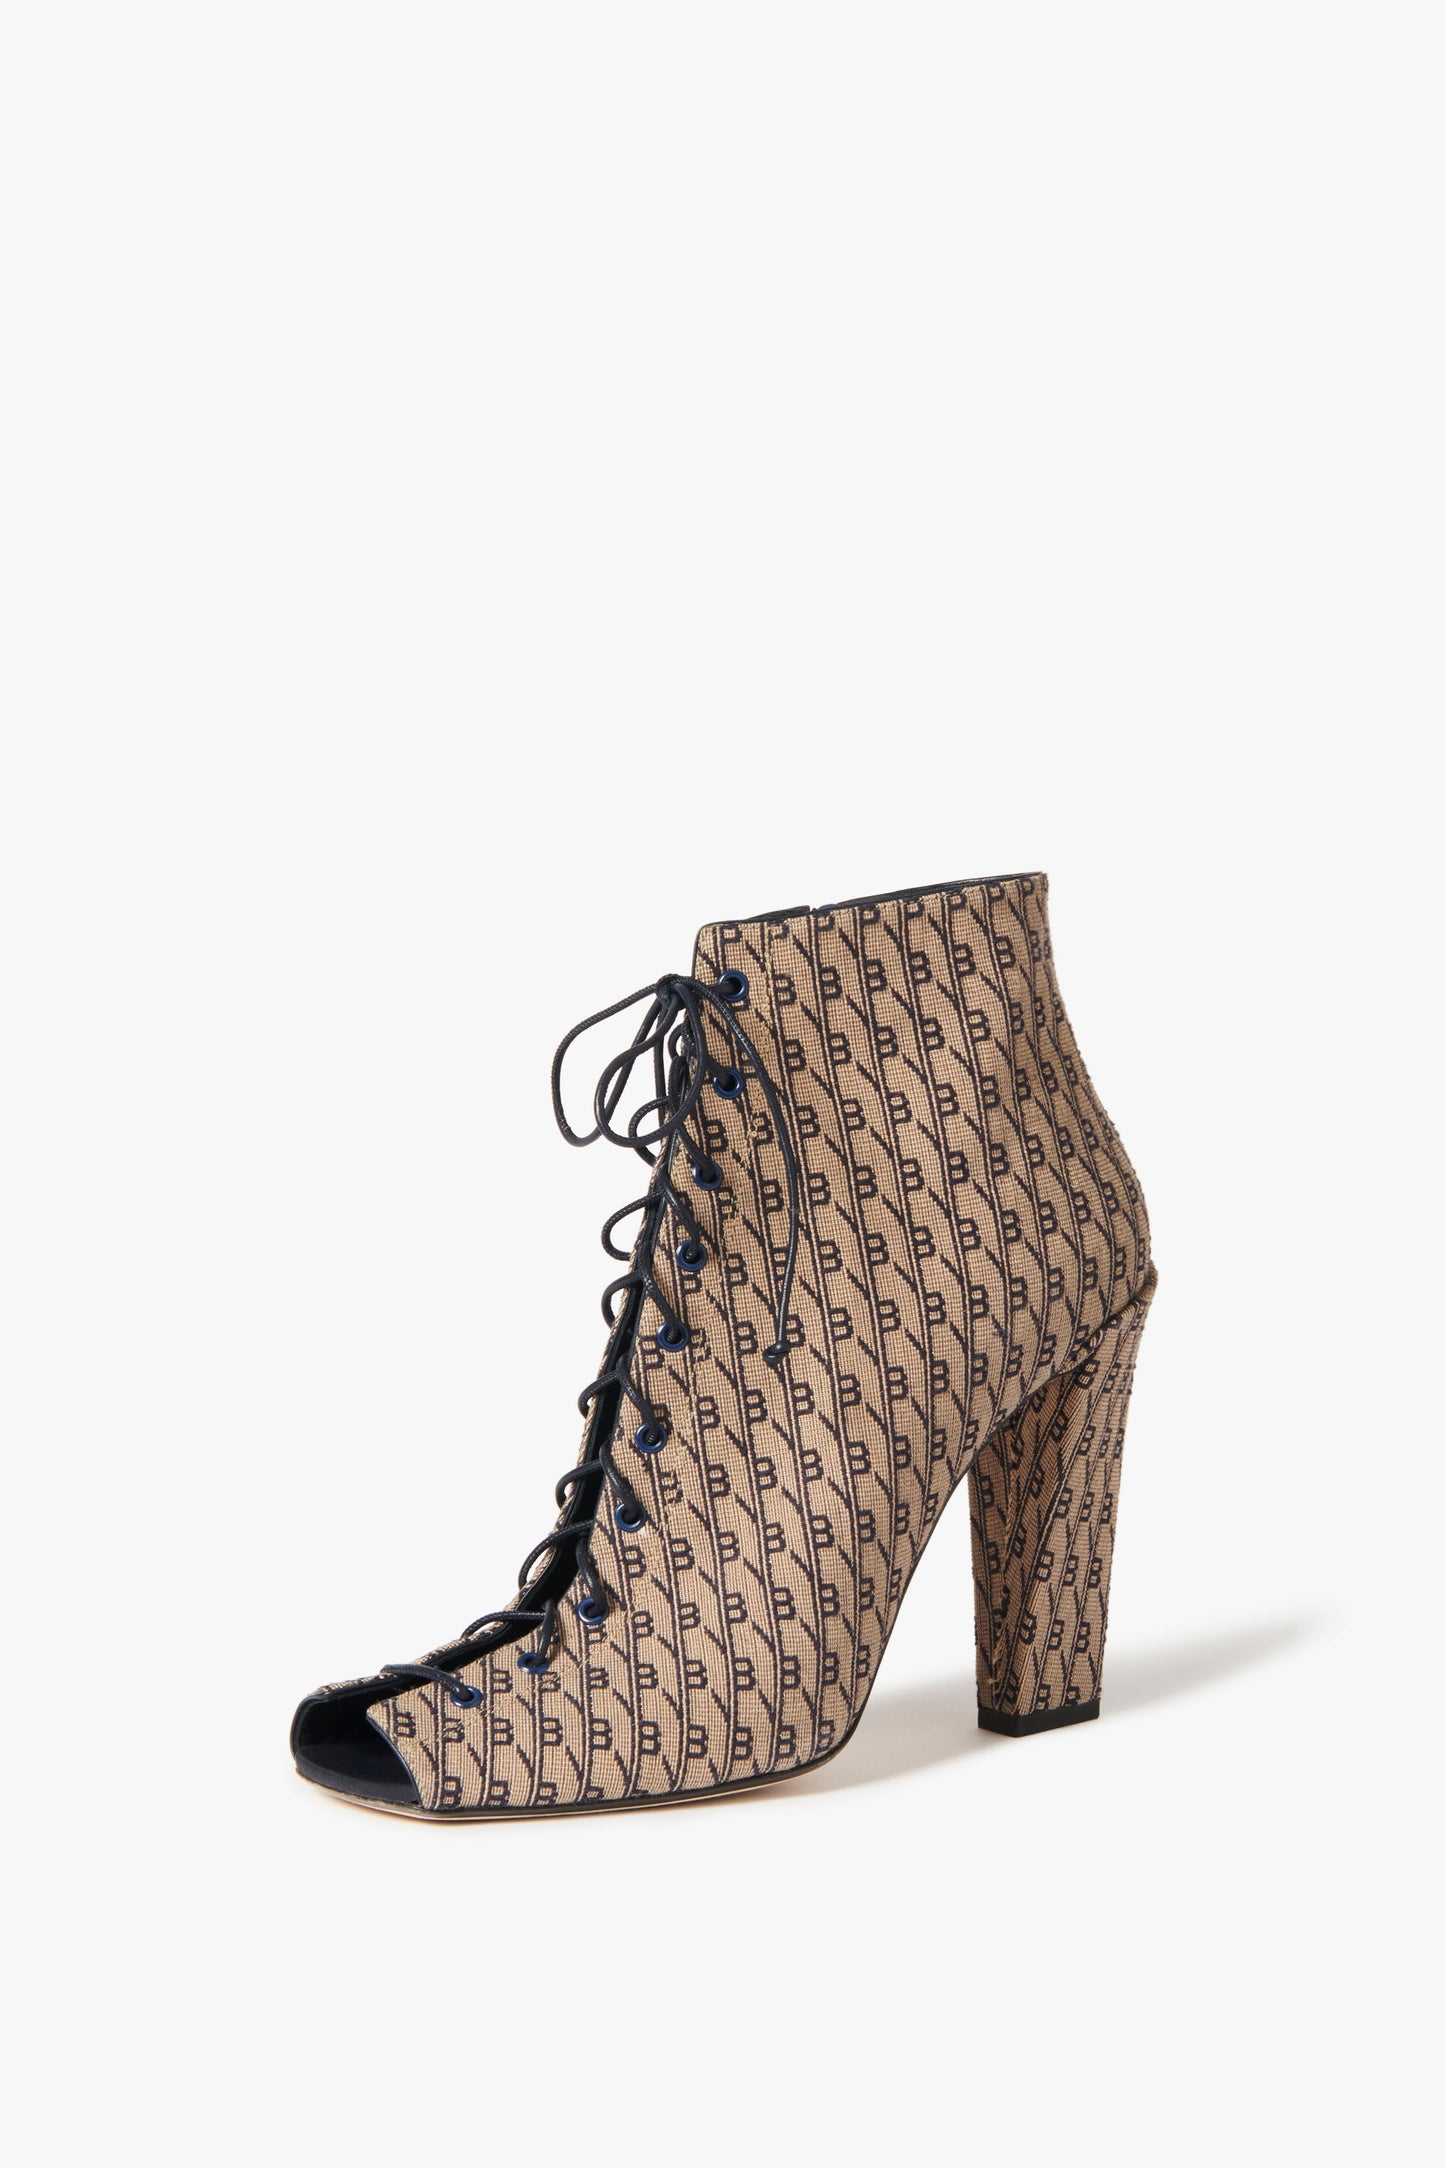 AUTHENTIC Louis Vuitton Monogram Women's Shoes Size 38.5, US